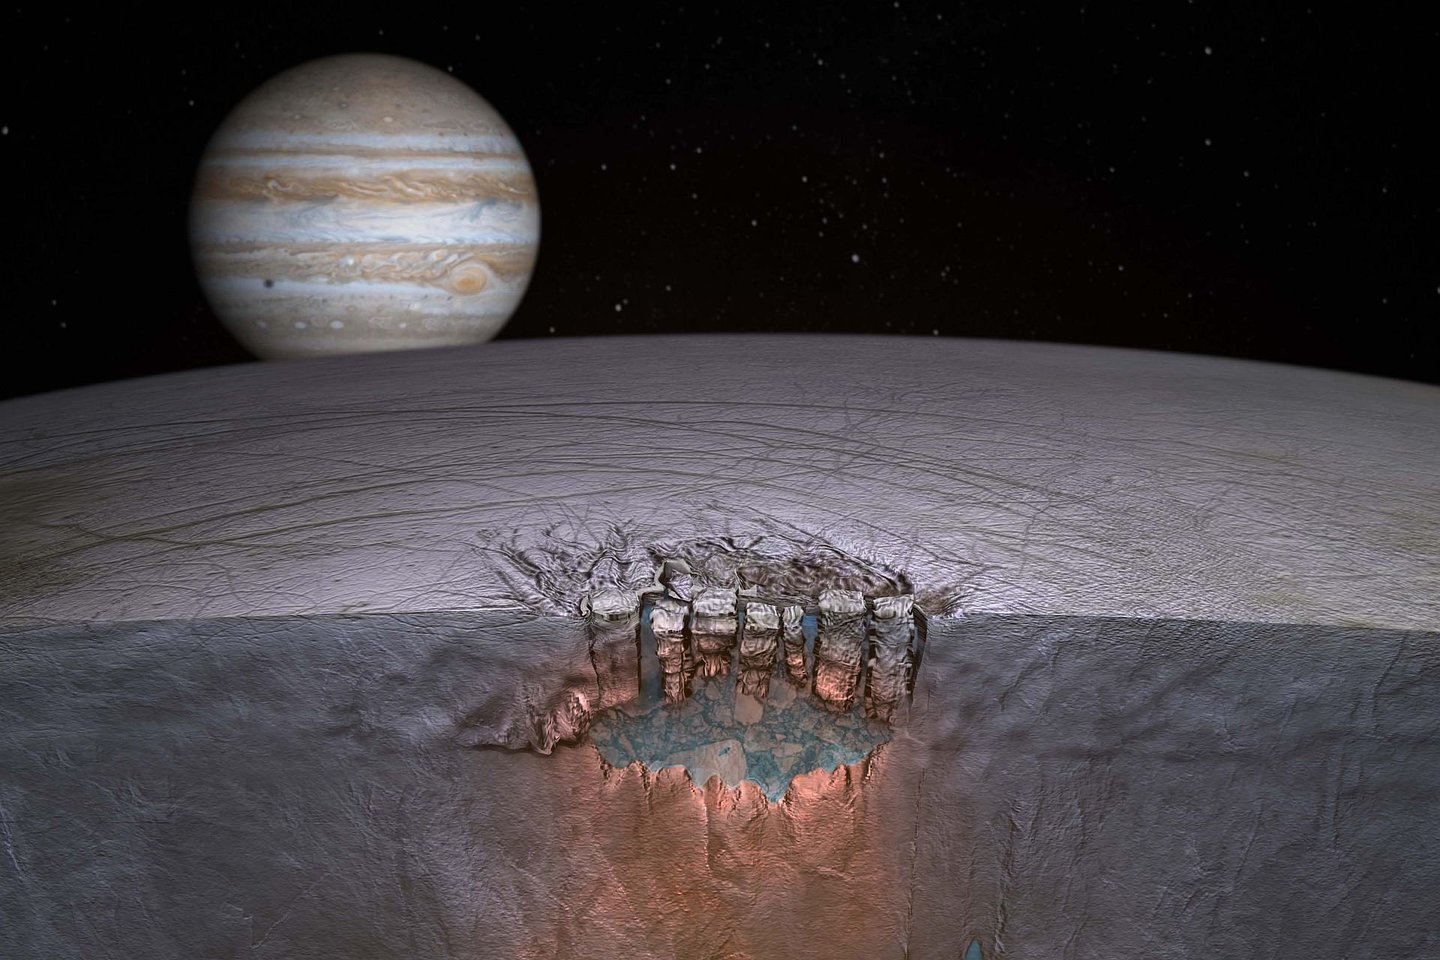  Naujausi Jupiterio palydovo duomenys dar priartino žmonijos svajonės išsipildymą<br> Reuters / Scanpix nuotr.